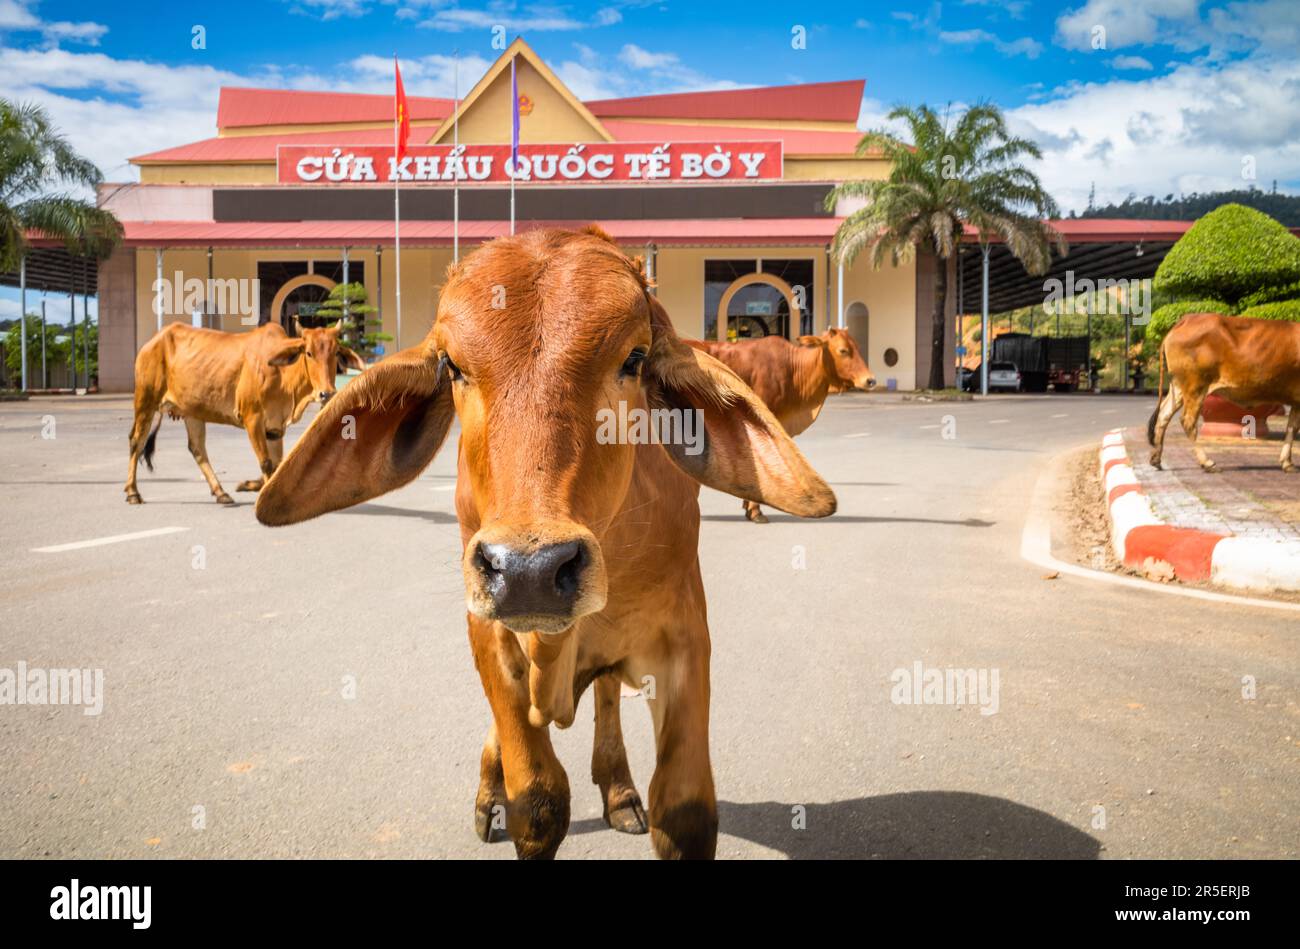 Le bétail traverse devant le bâtiment abritant la porte de la frontière internationale Vietnam-Laos à Bo y, district de Ngoc Hoi, province de Kontum, dans le centre de la province de Hé Banque D'Images